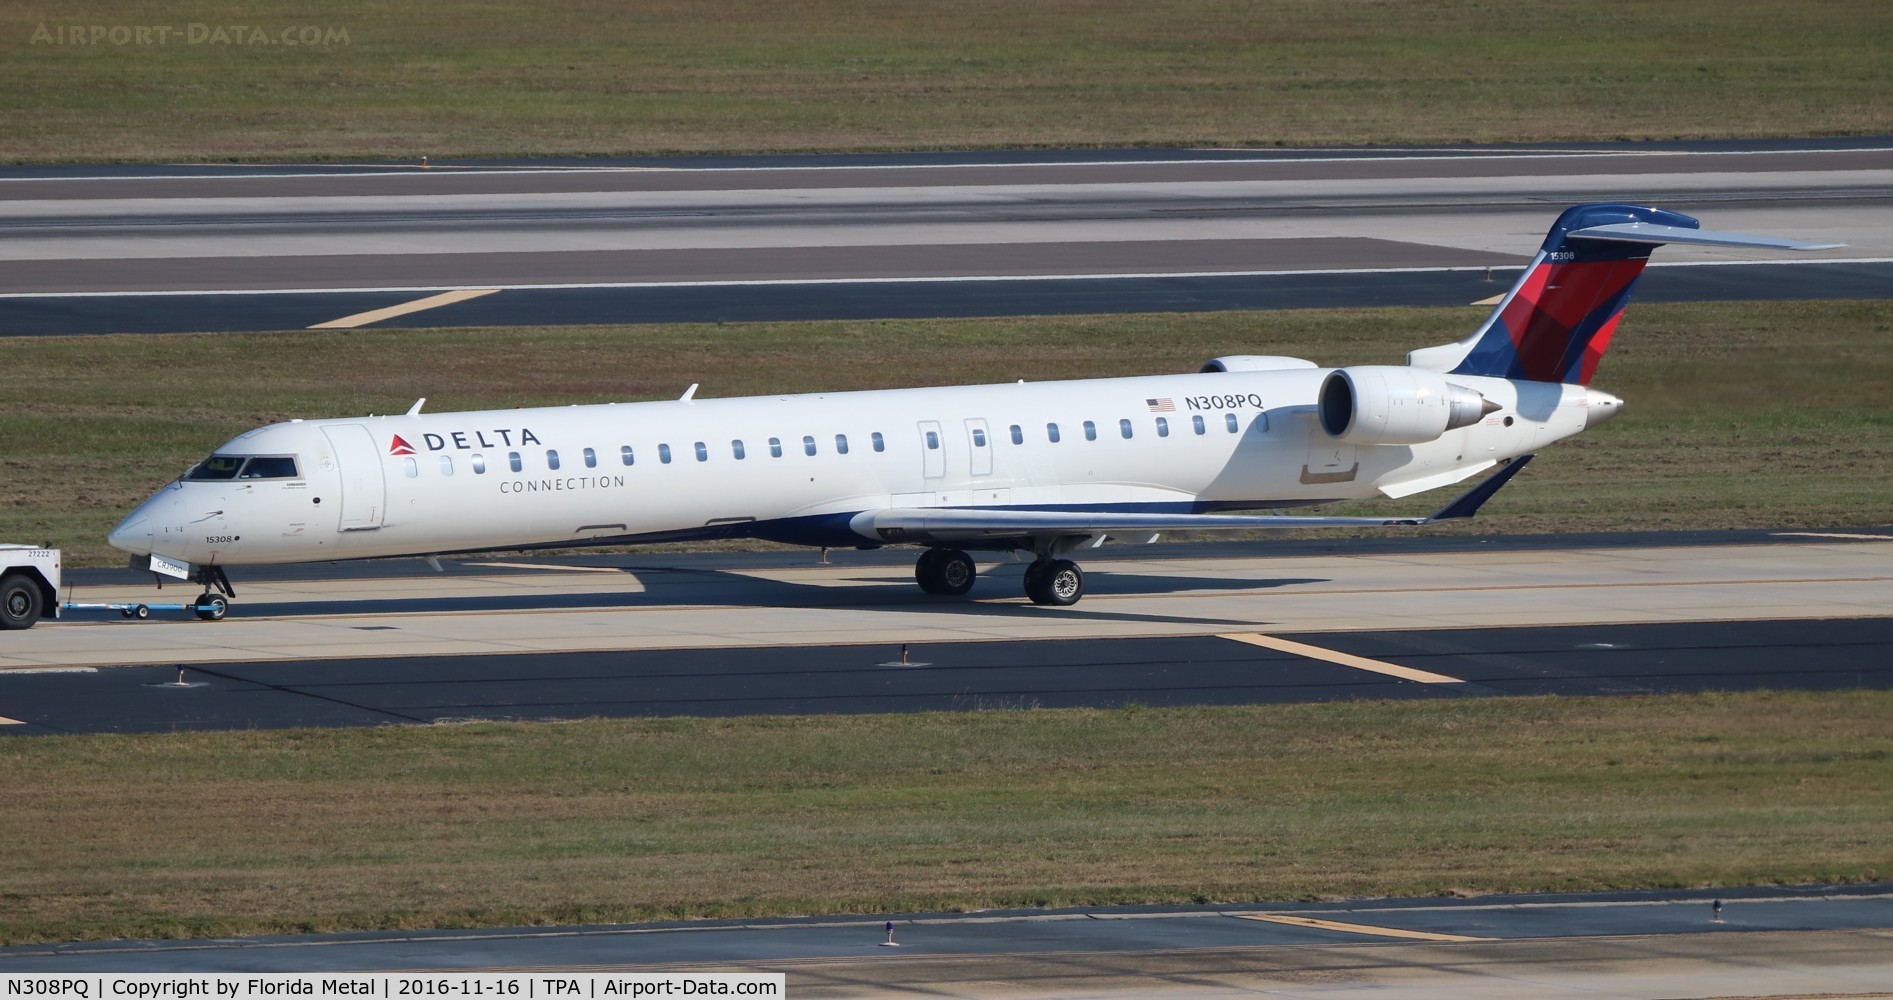 N308PQ, 2014 Bombardier CRJ-900LR (CL-600-2D24) C/N 15308, Delta Connection